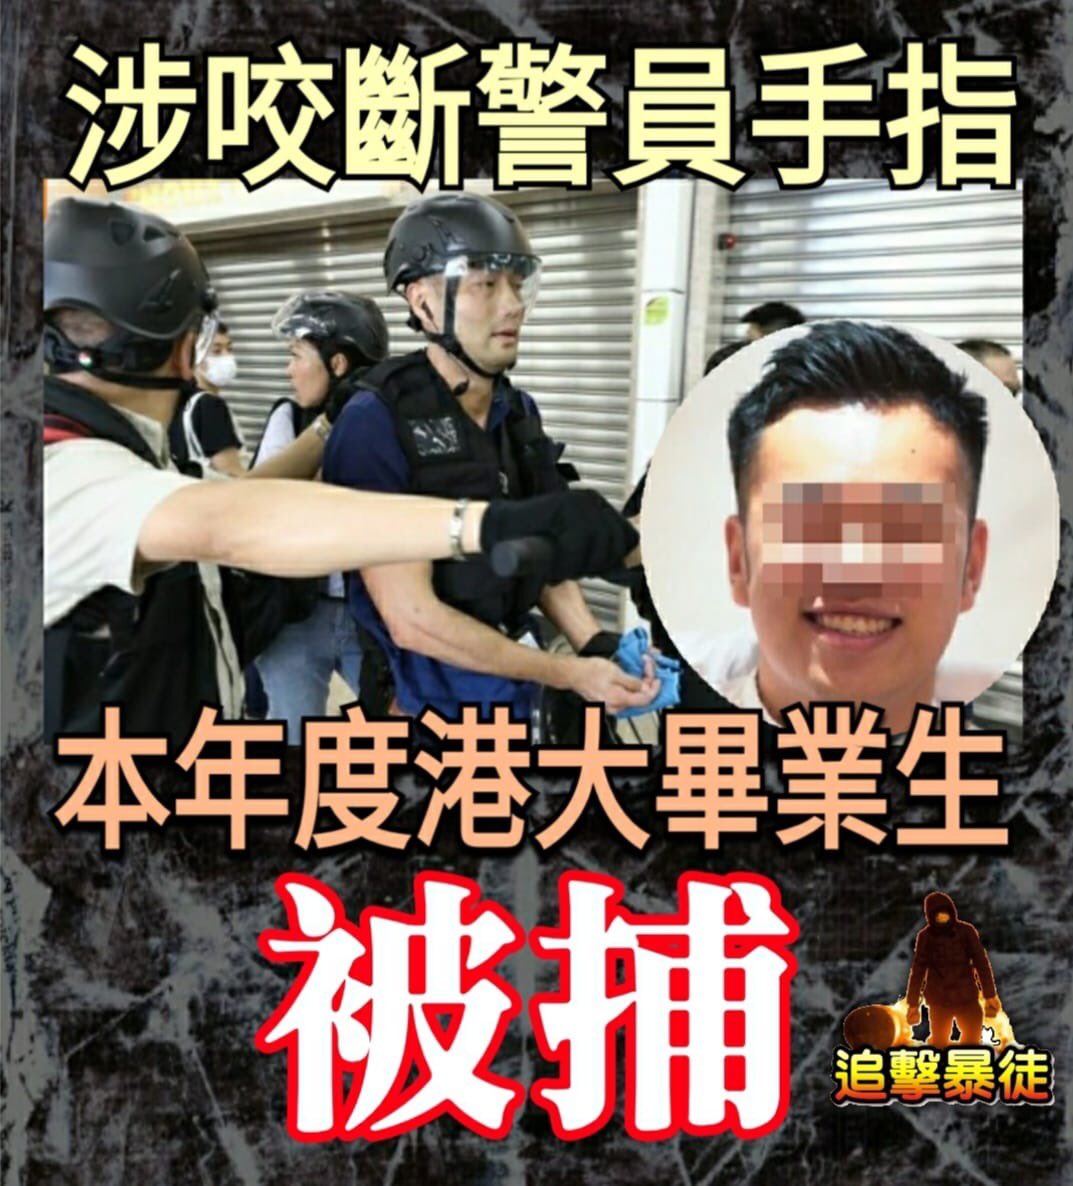 大好前程被毀，留下案底找工作都難，移民已經沒機會，恐怕只剩下政治抗爭路可以走。洗腦可悲，政客可恥。#FreedomHK #antiELABhk #HKProtests  #香港遊行 #香港暴動